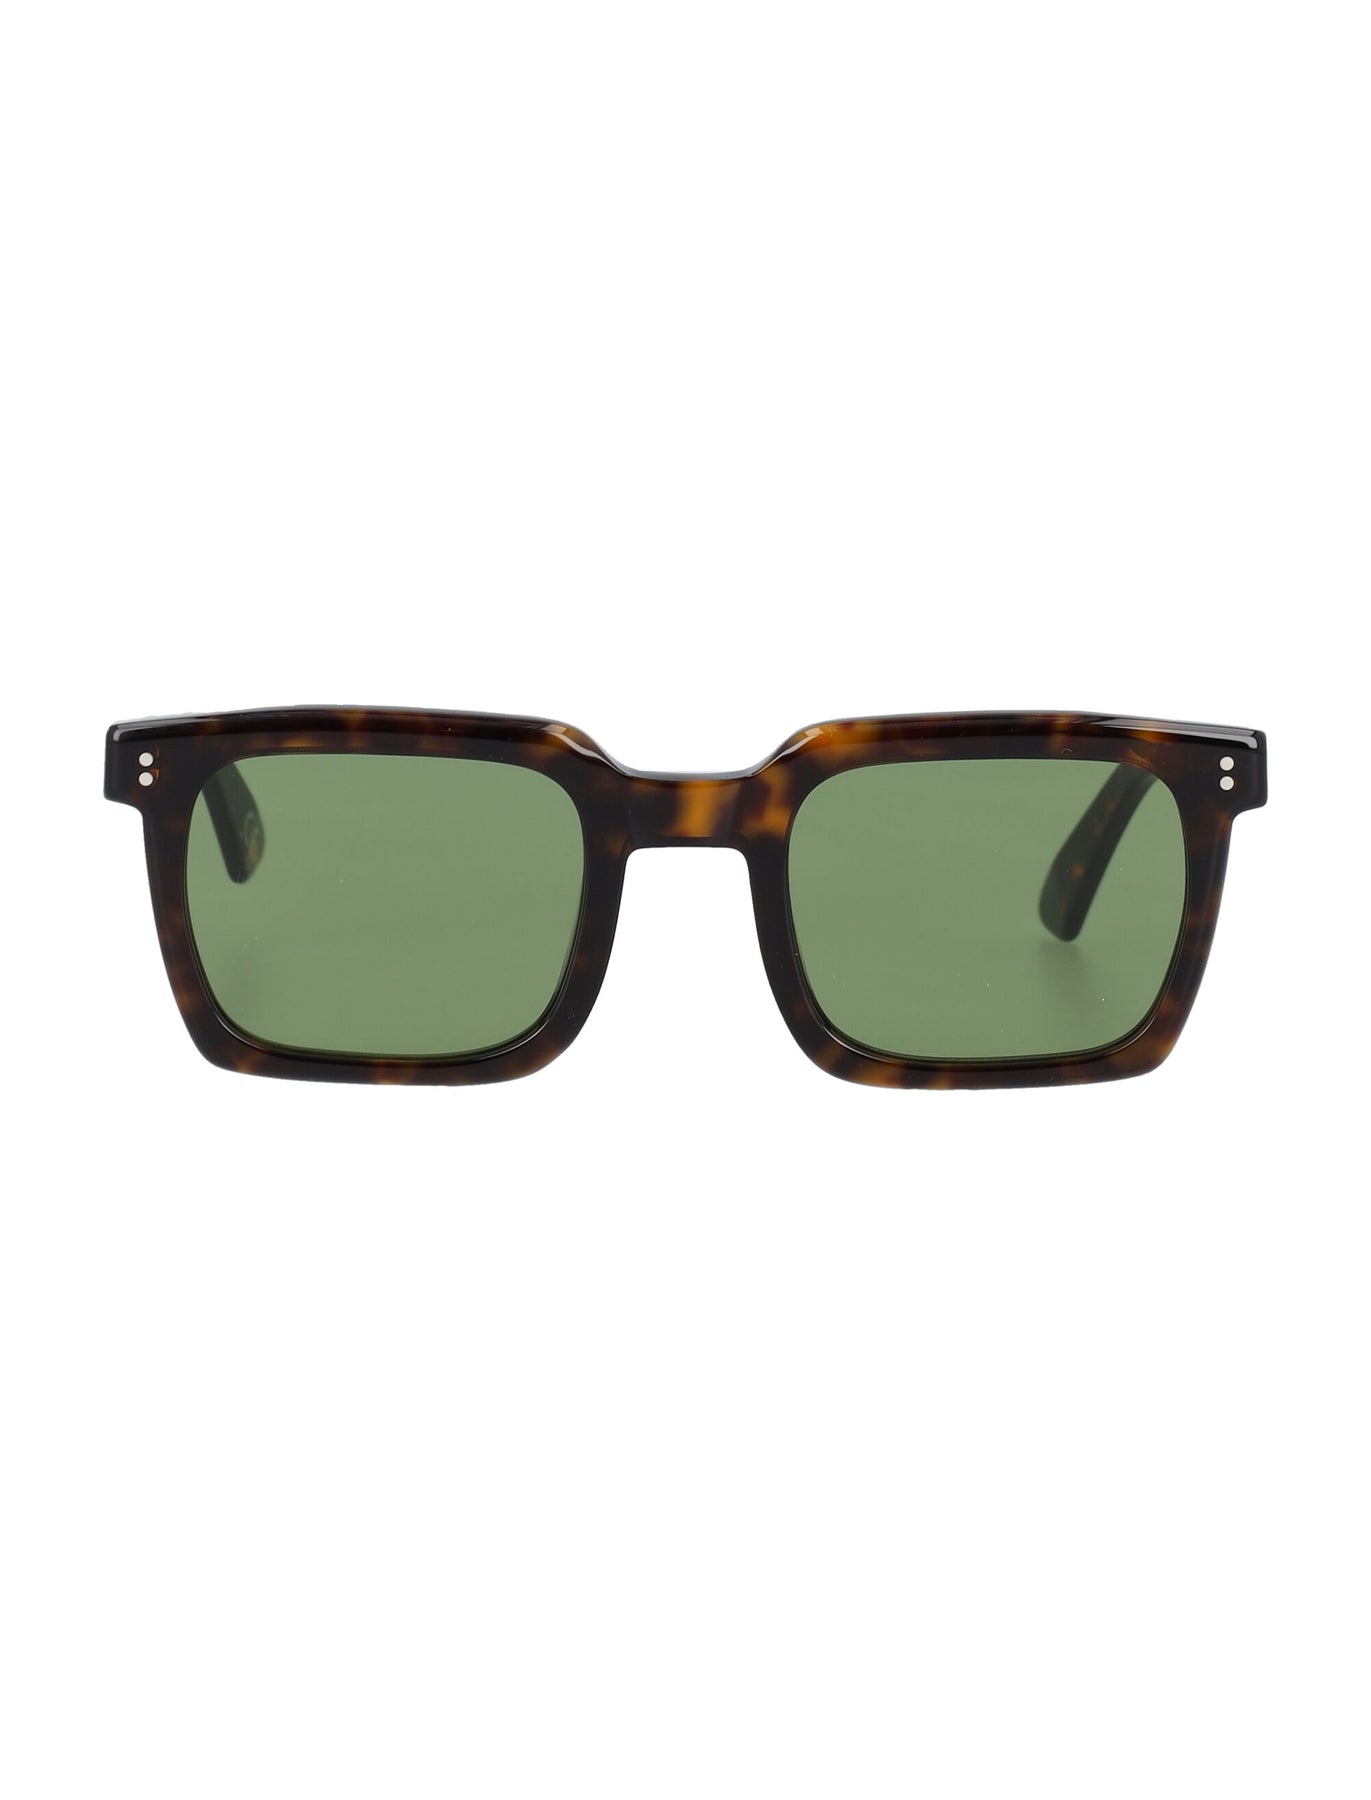 SECOLO 3627 Sunglasses - Stylish and UV-Protected Eyewear | LOZURI